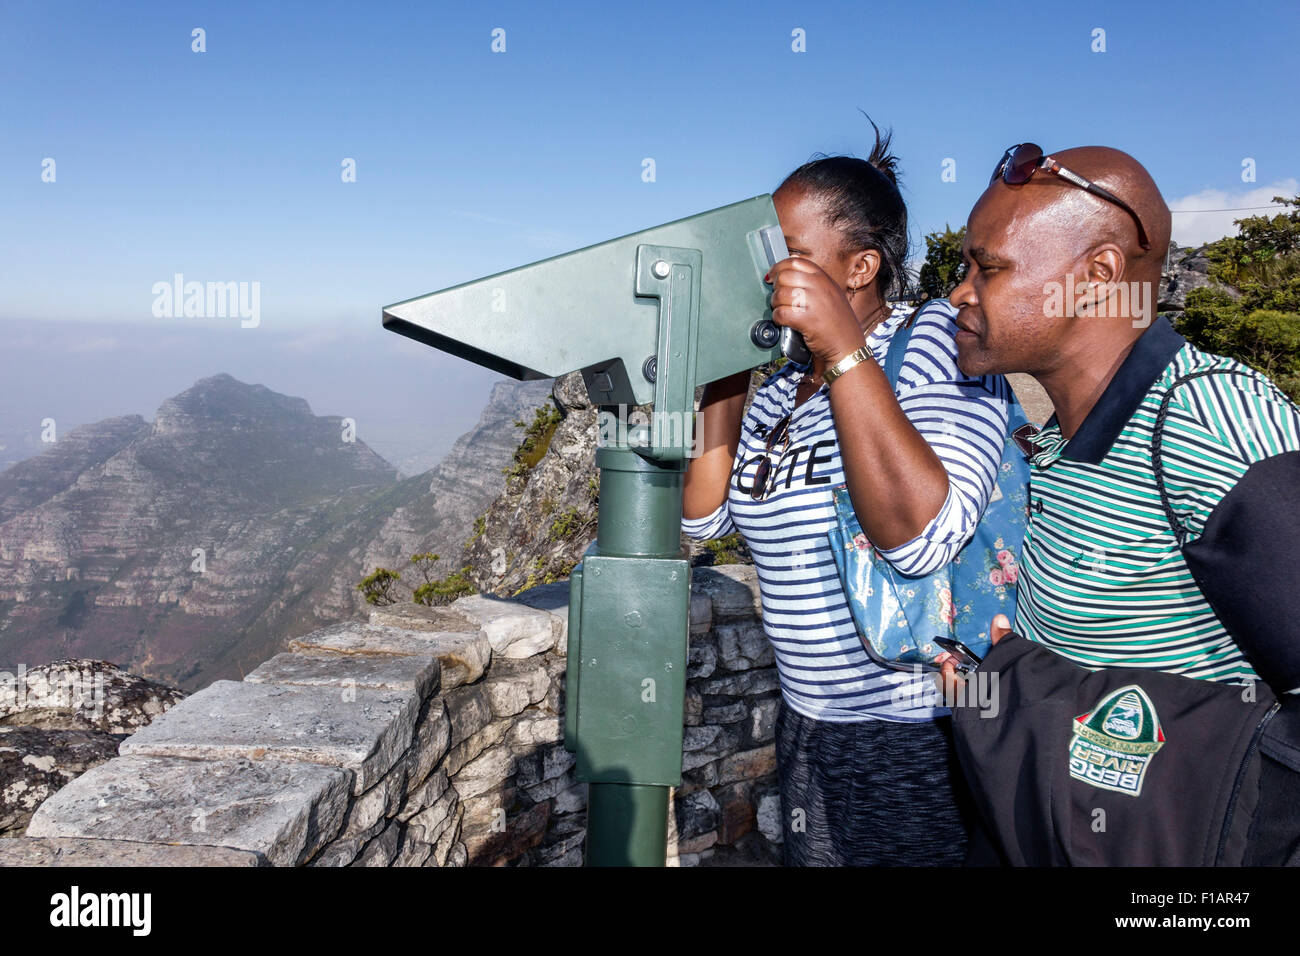 Città del Capo Sud Africa, Table Mountain National Park, riserva naturale, top, Overlook, Black Afro American, uomo uomini maschio, donna donne, telescopica binocul Foto Stock